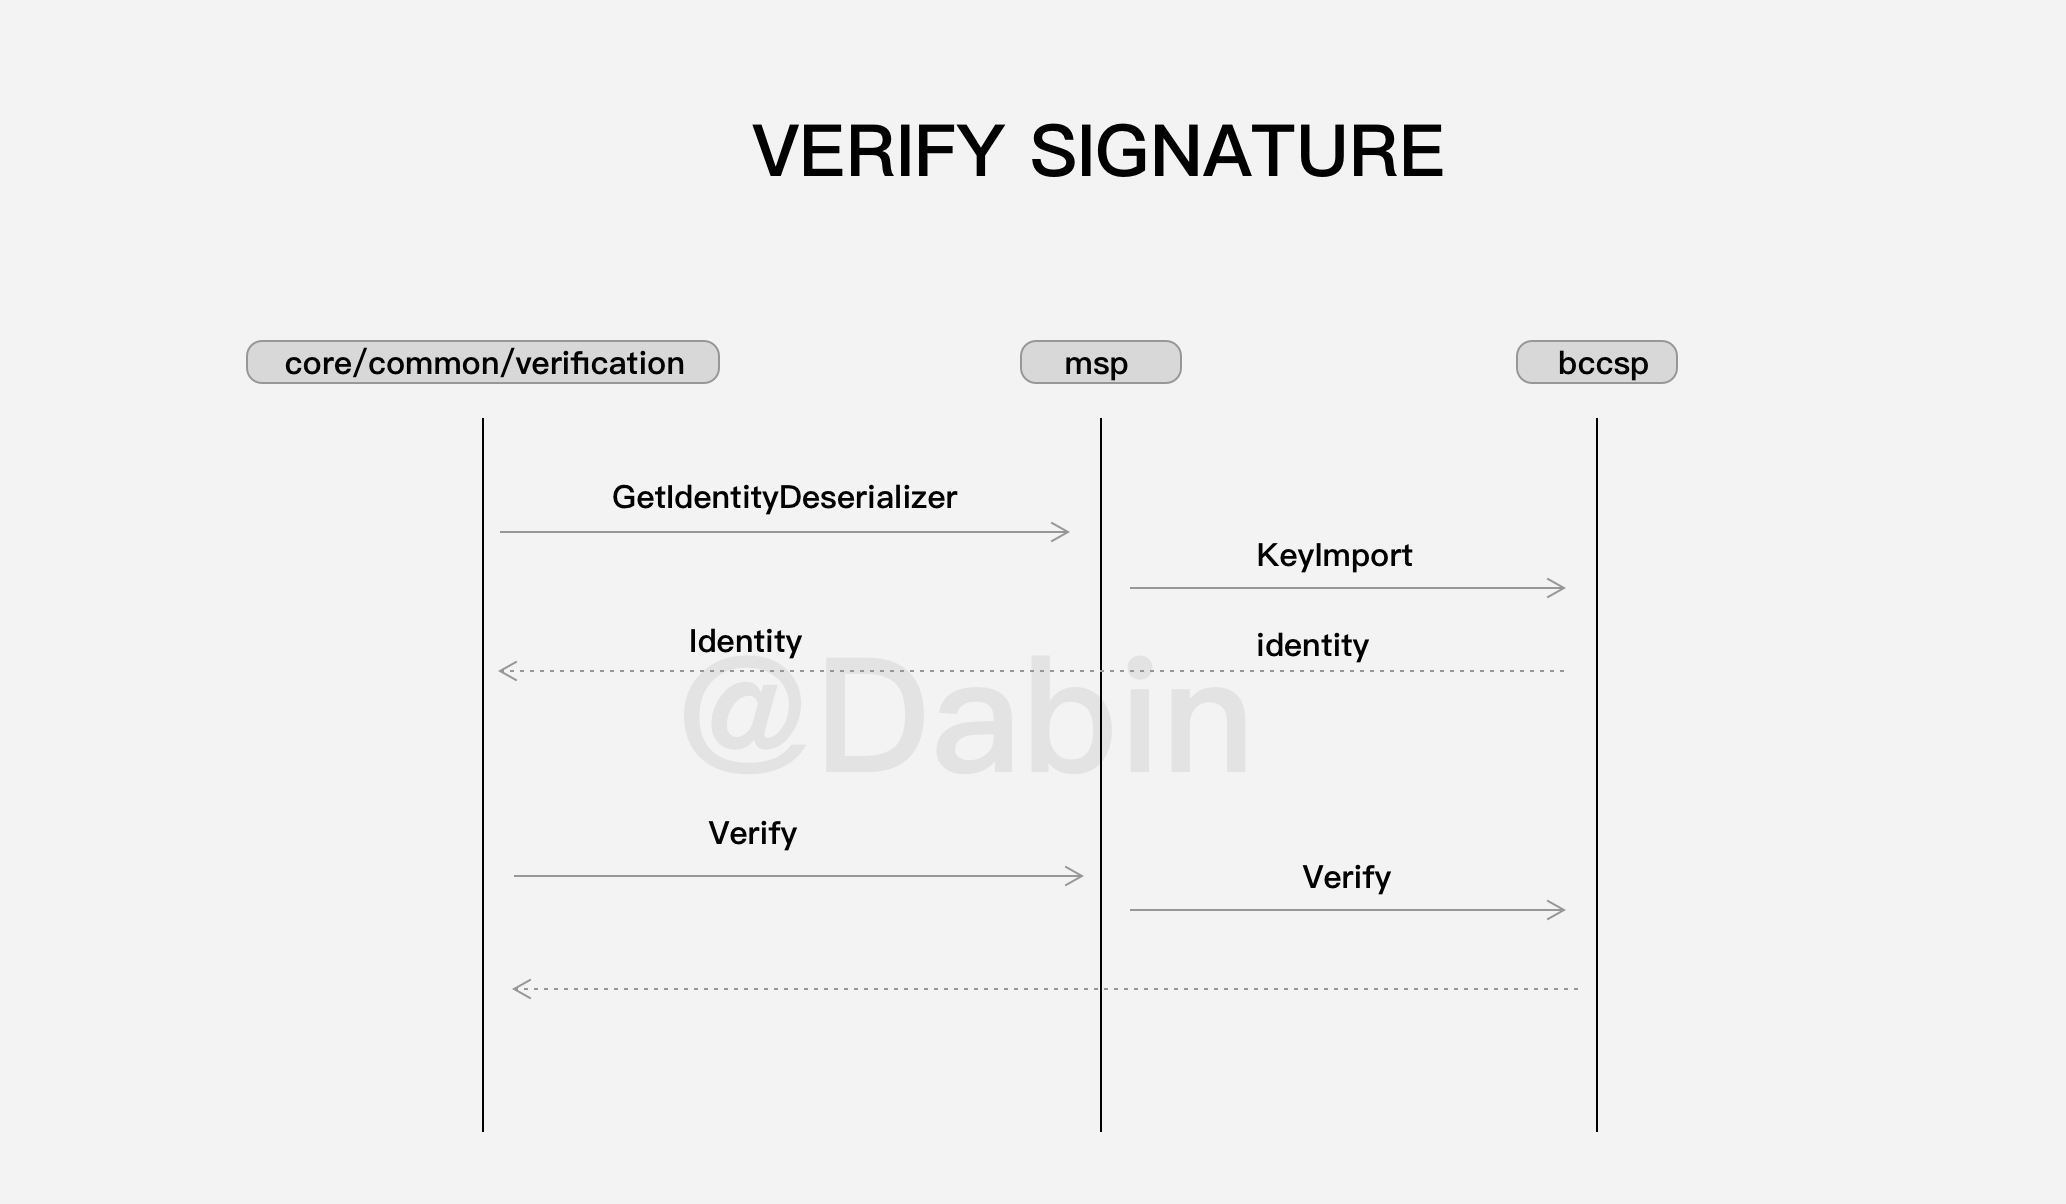 Verify signature